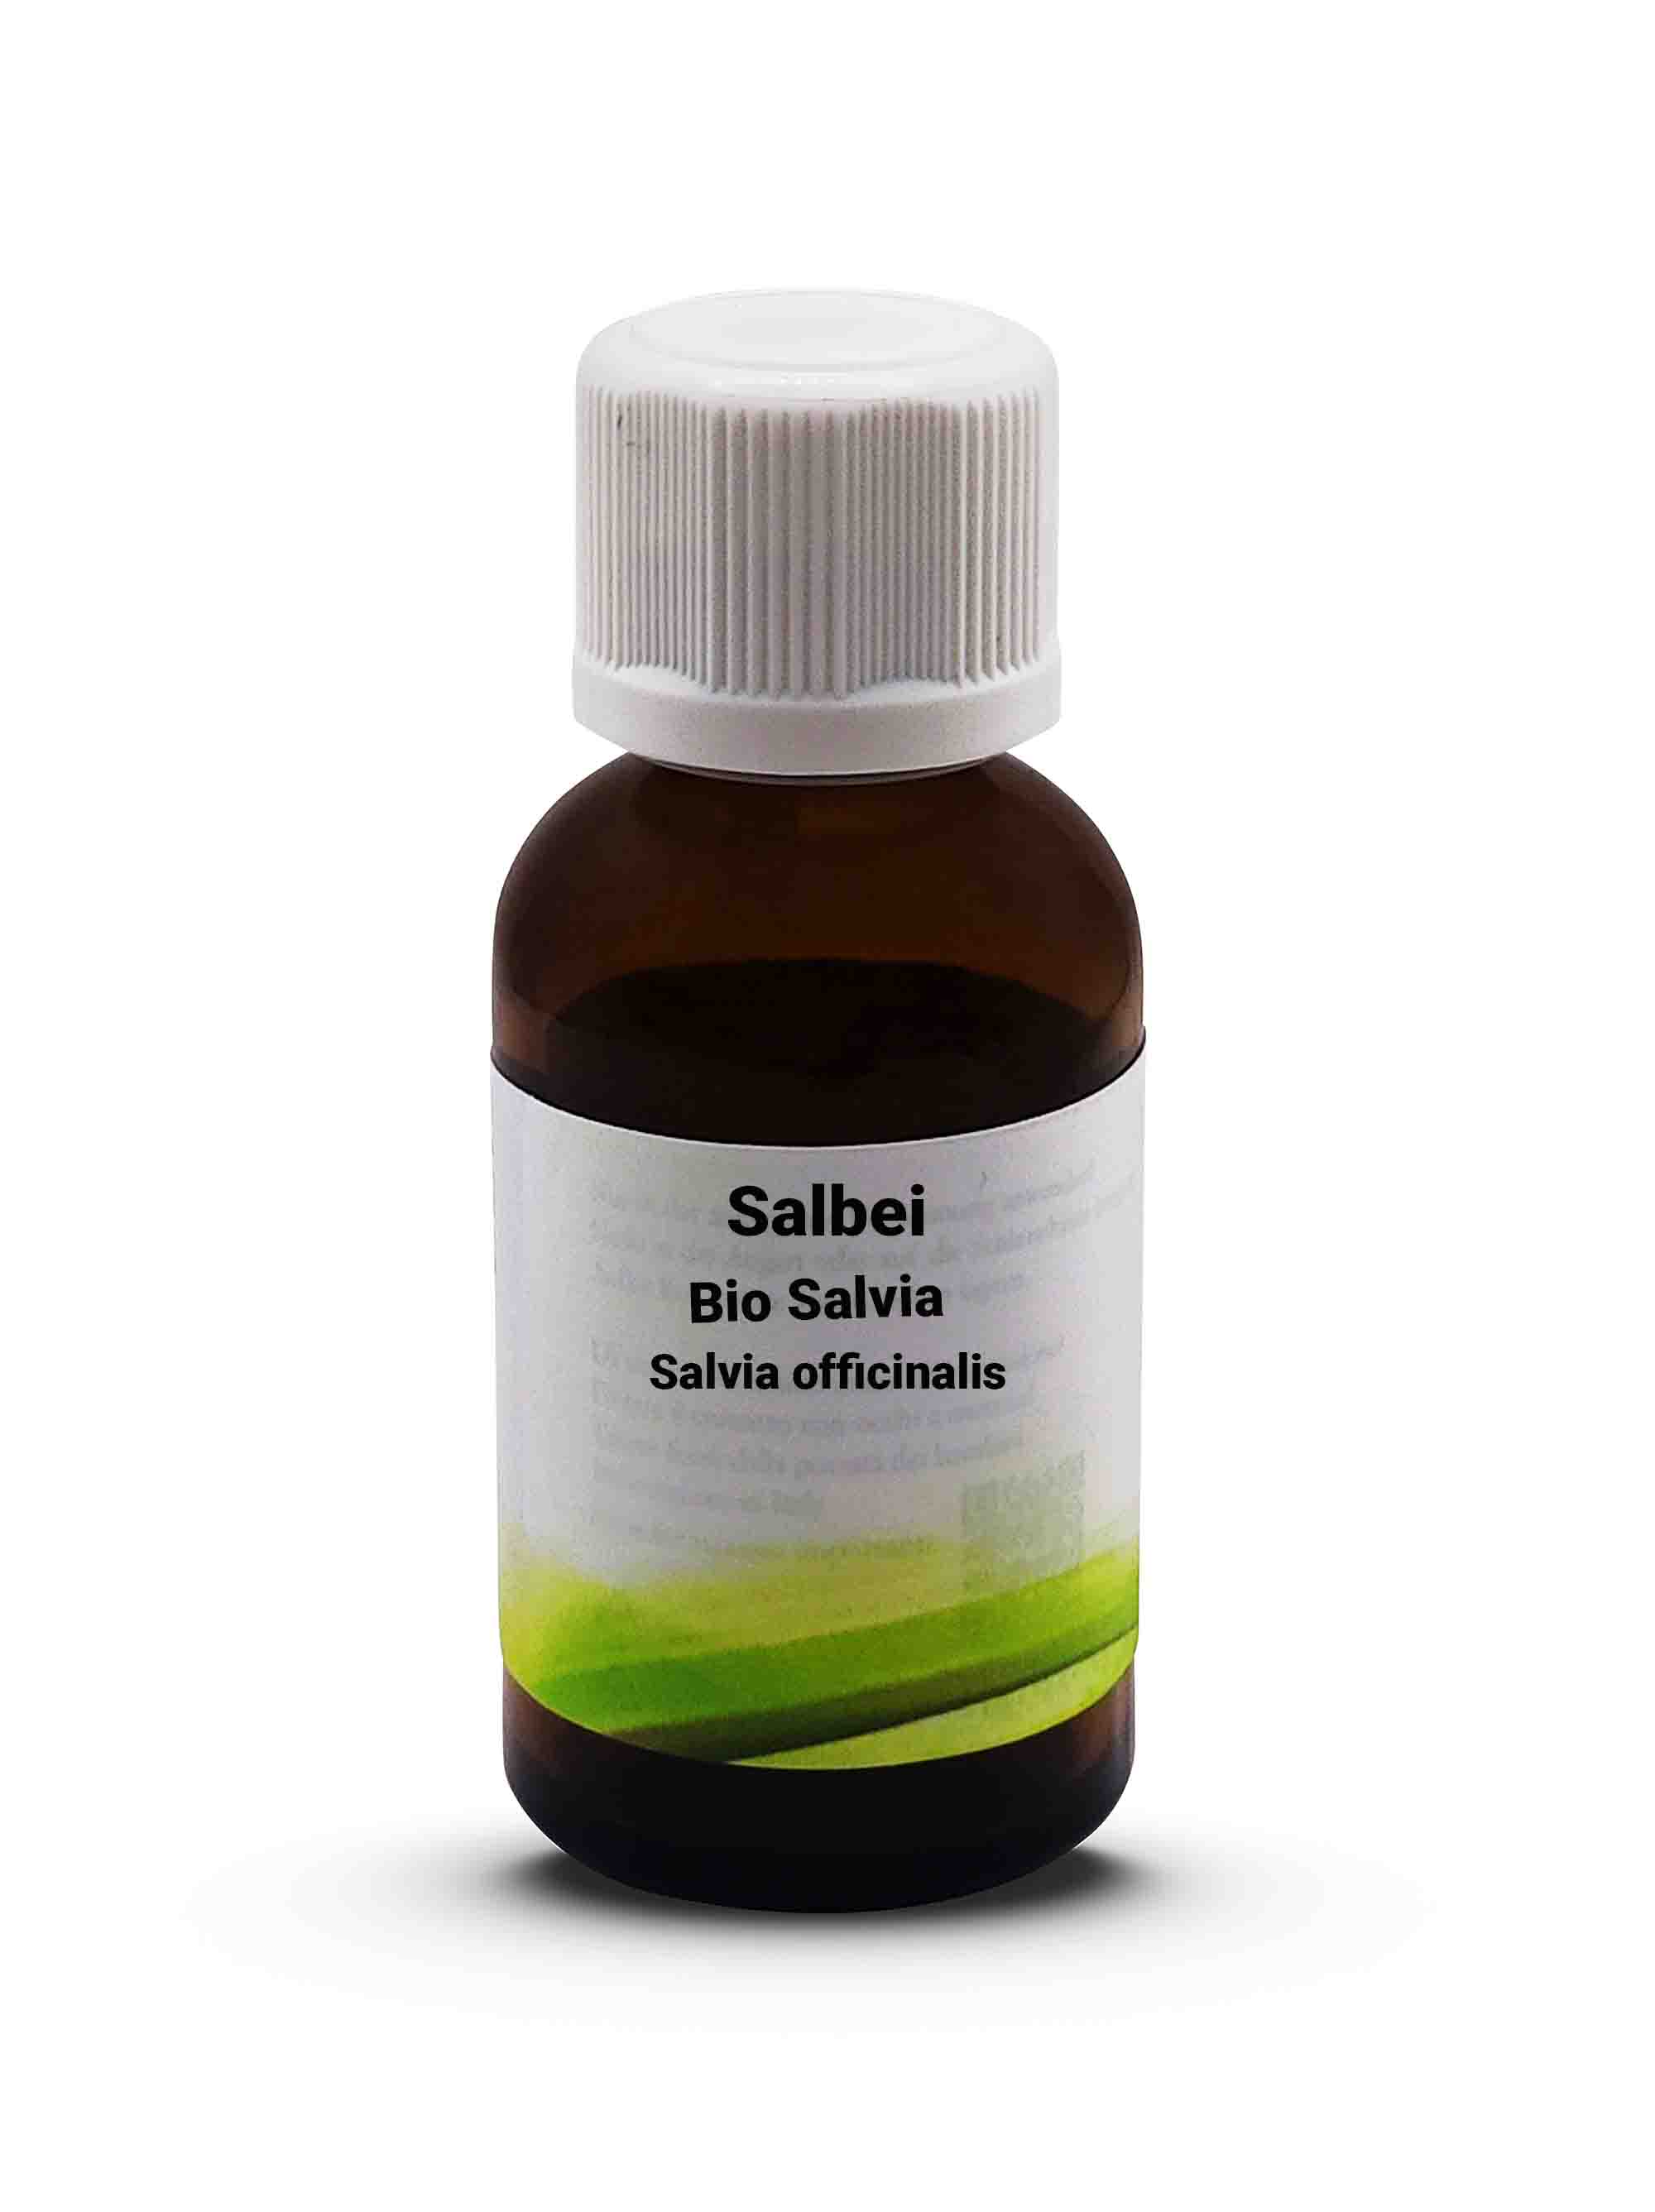 Salbei Bio Salvia - Salvia officinalis 30 ml